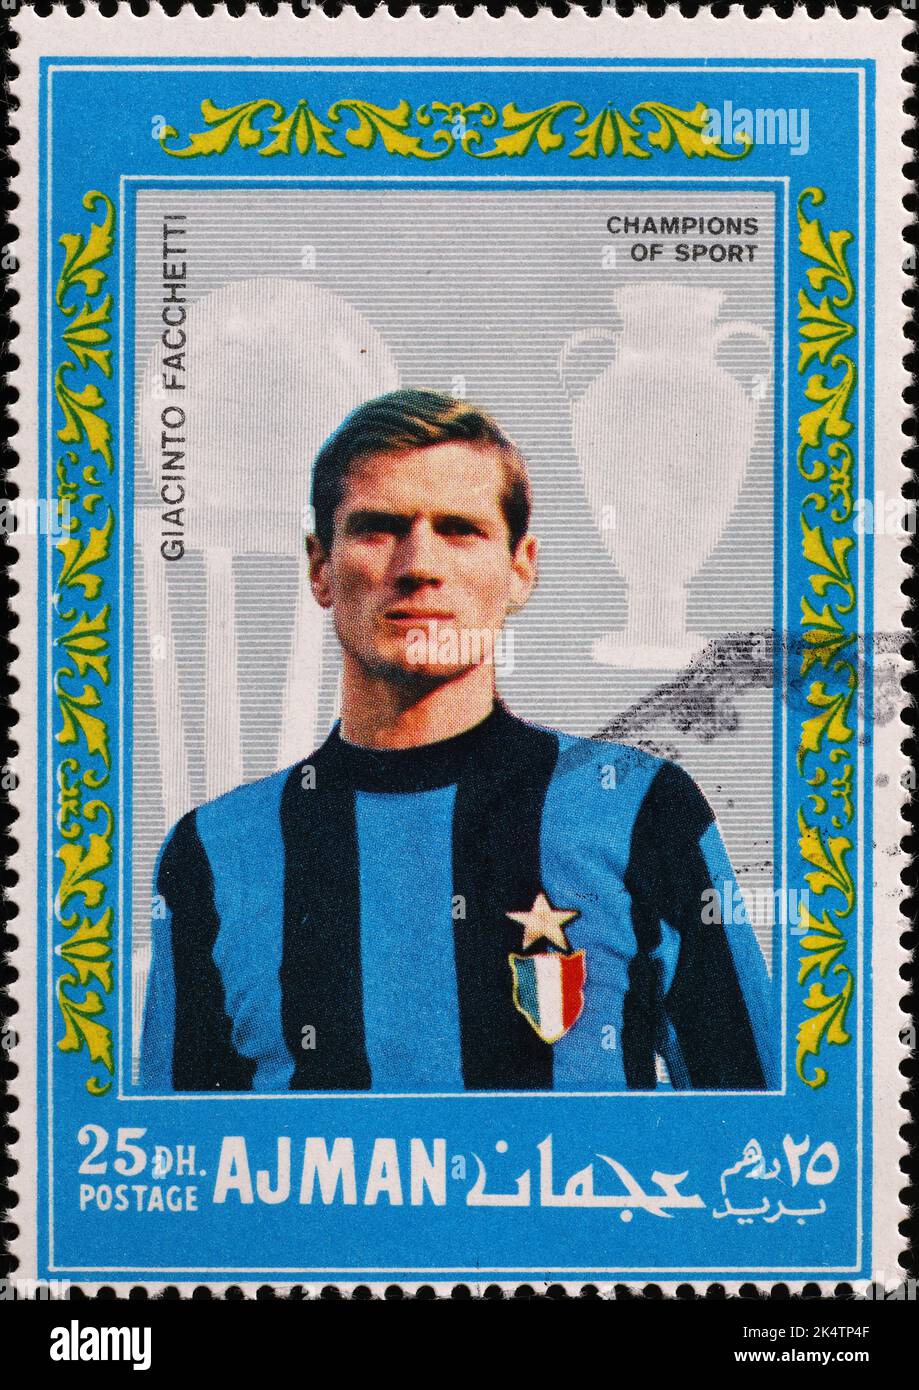 Footballer Giacinto Facchetti on old postage stamp Stock Photo